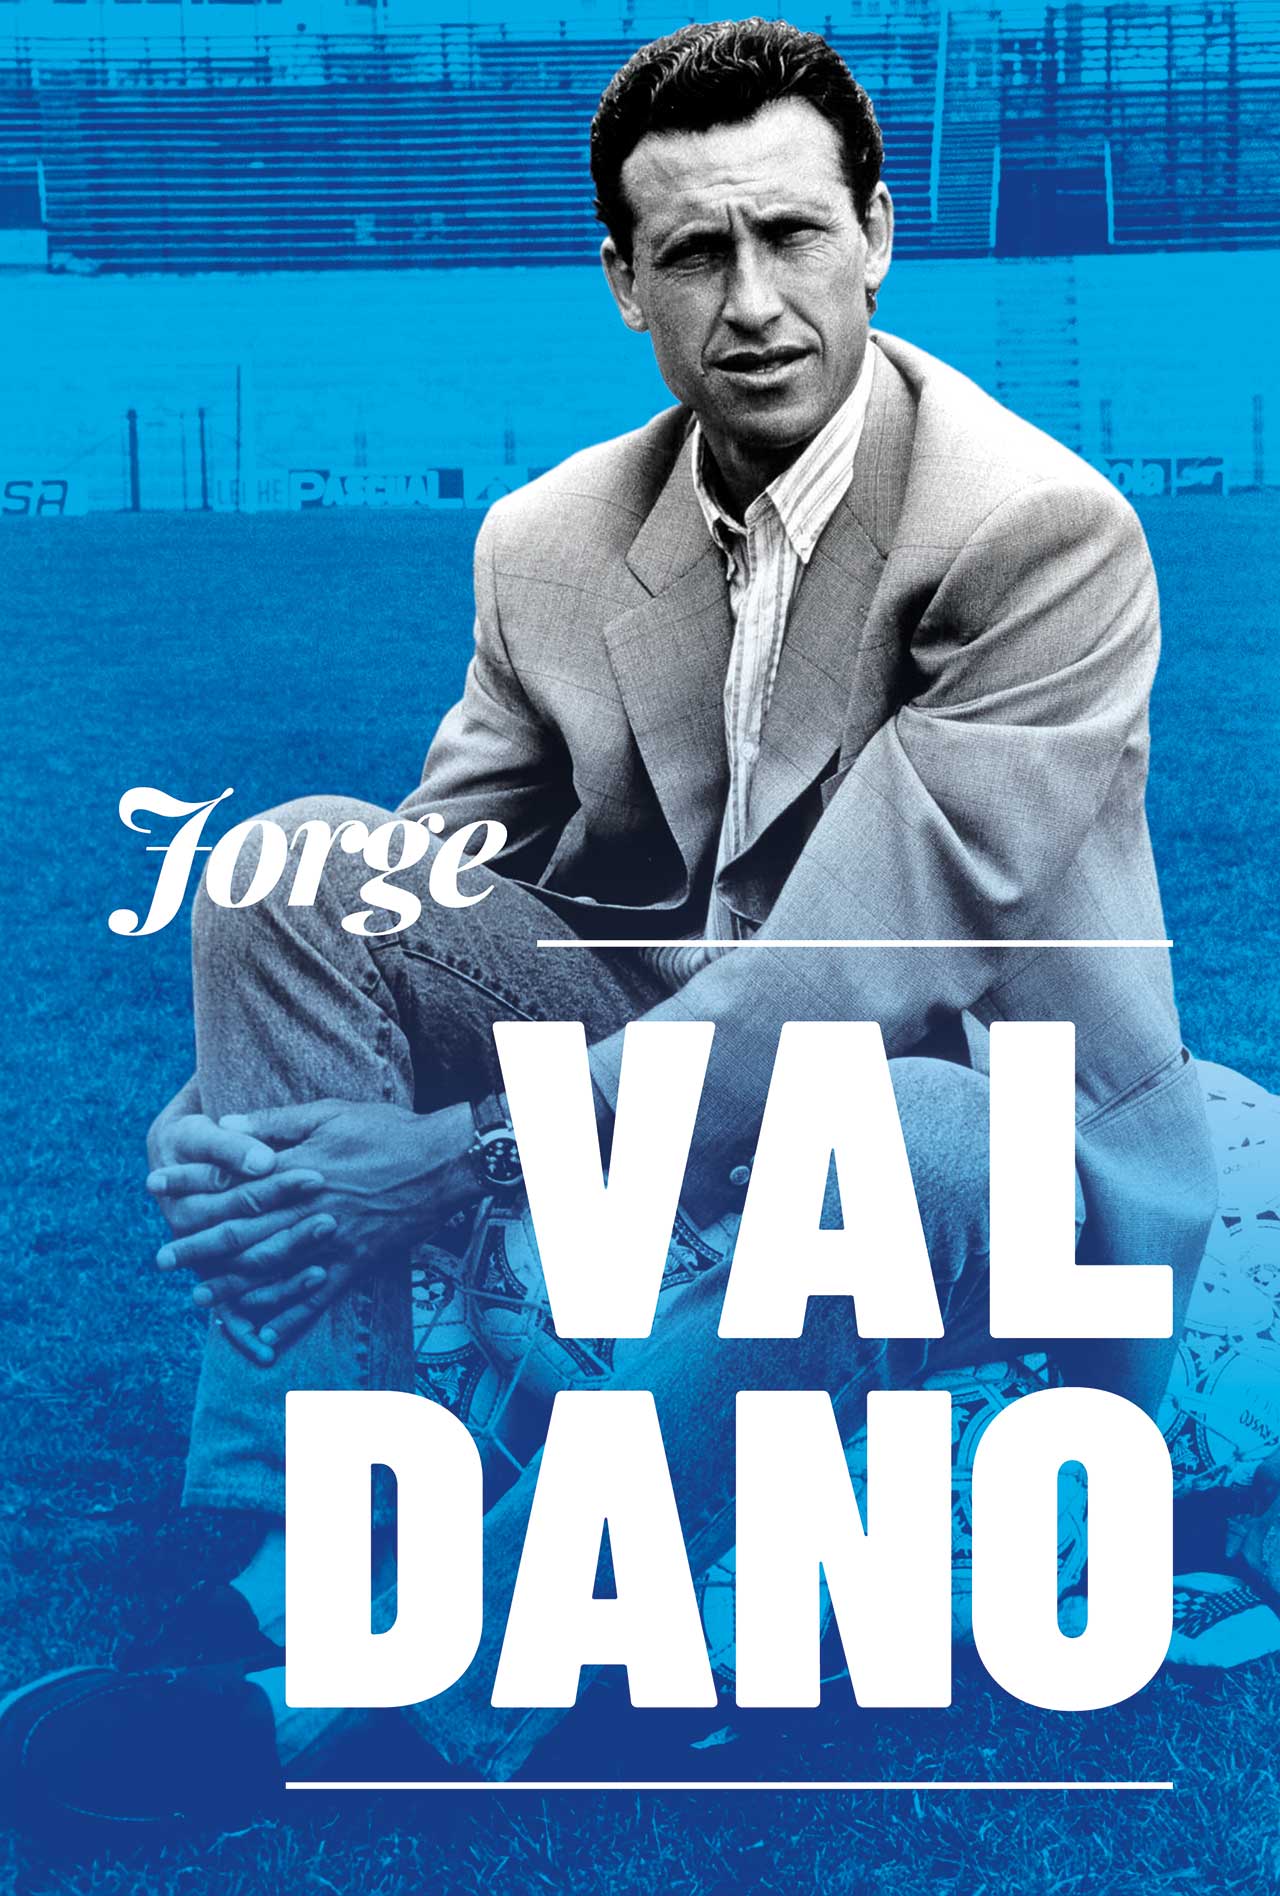 Exposición CD Tenerife: Fotografía en blanco y negro de Jorge Valdano, editada con fondo en duotono. Sobre él, su nombre con una tipografía de palo blanca. Se encuentra sentado en el campo de juego sobre una red con balones de fútbol.